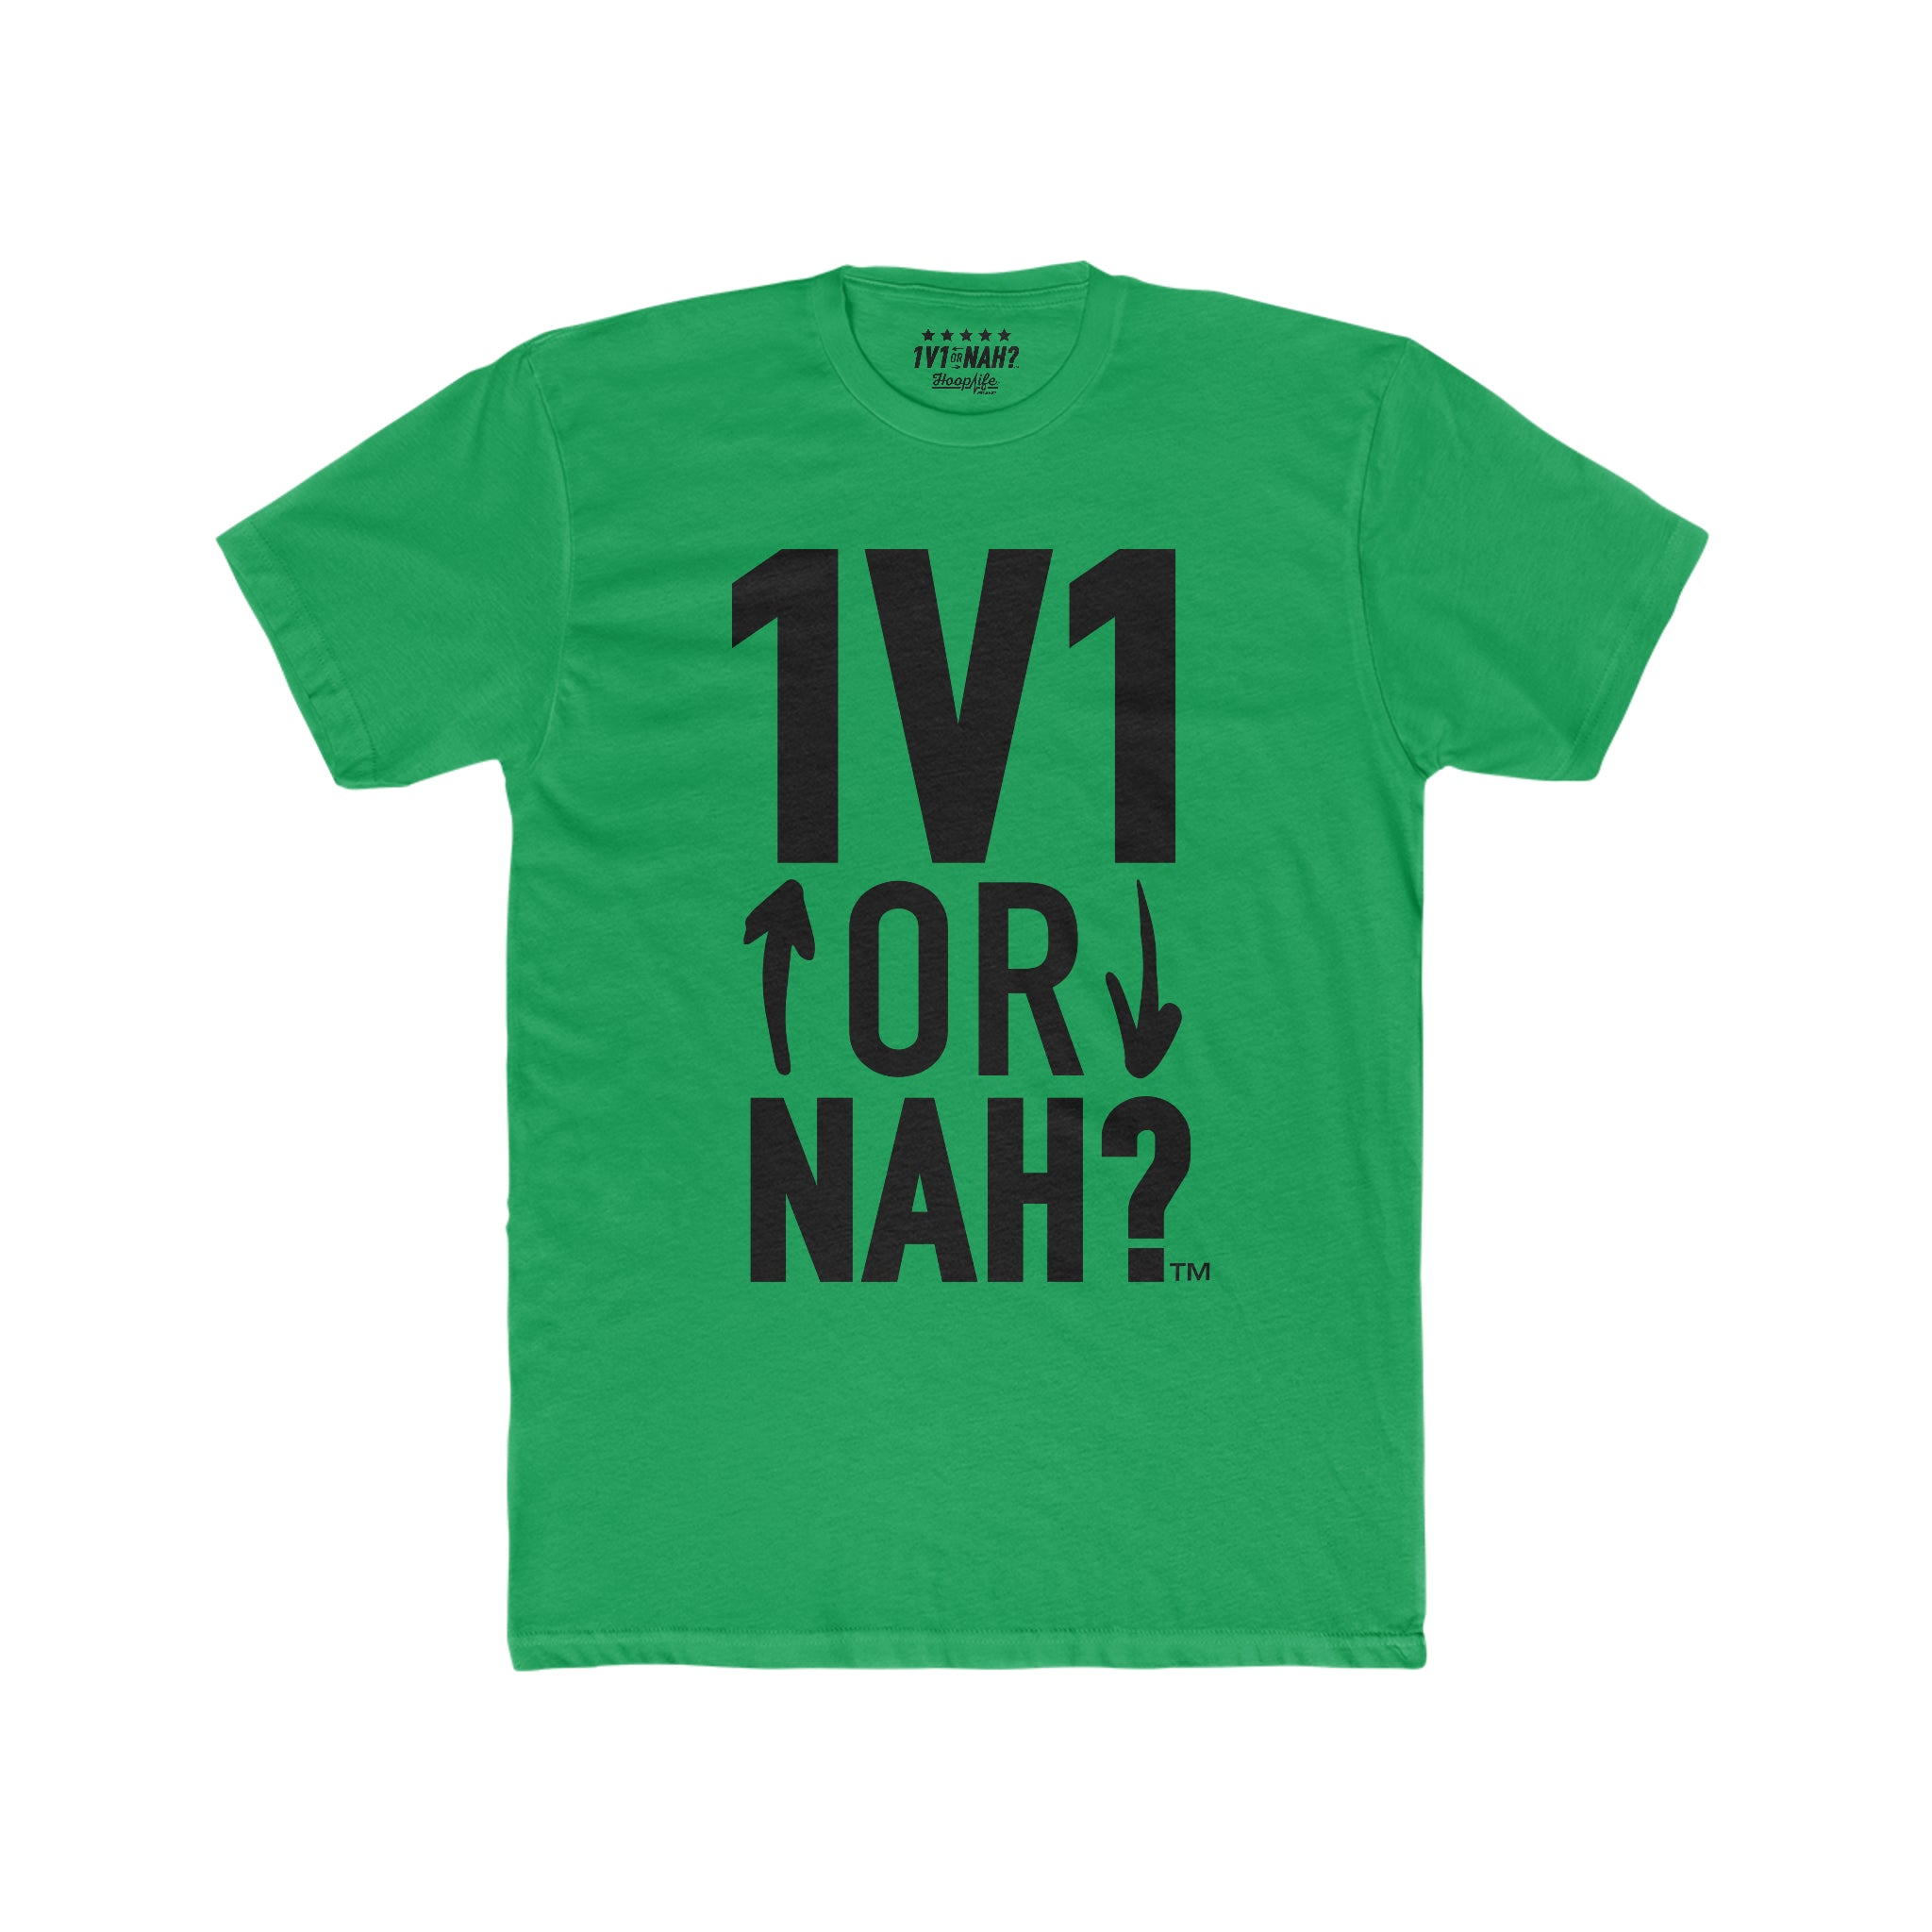 1V1 or NAH?™